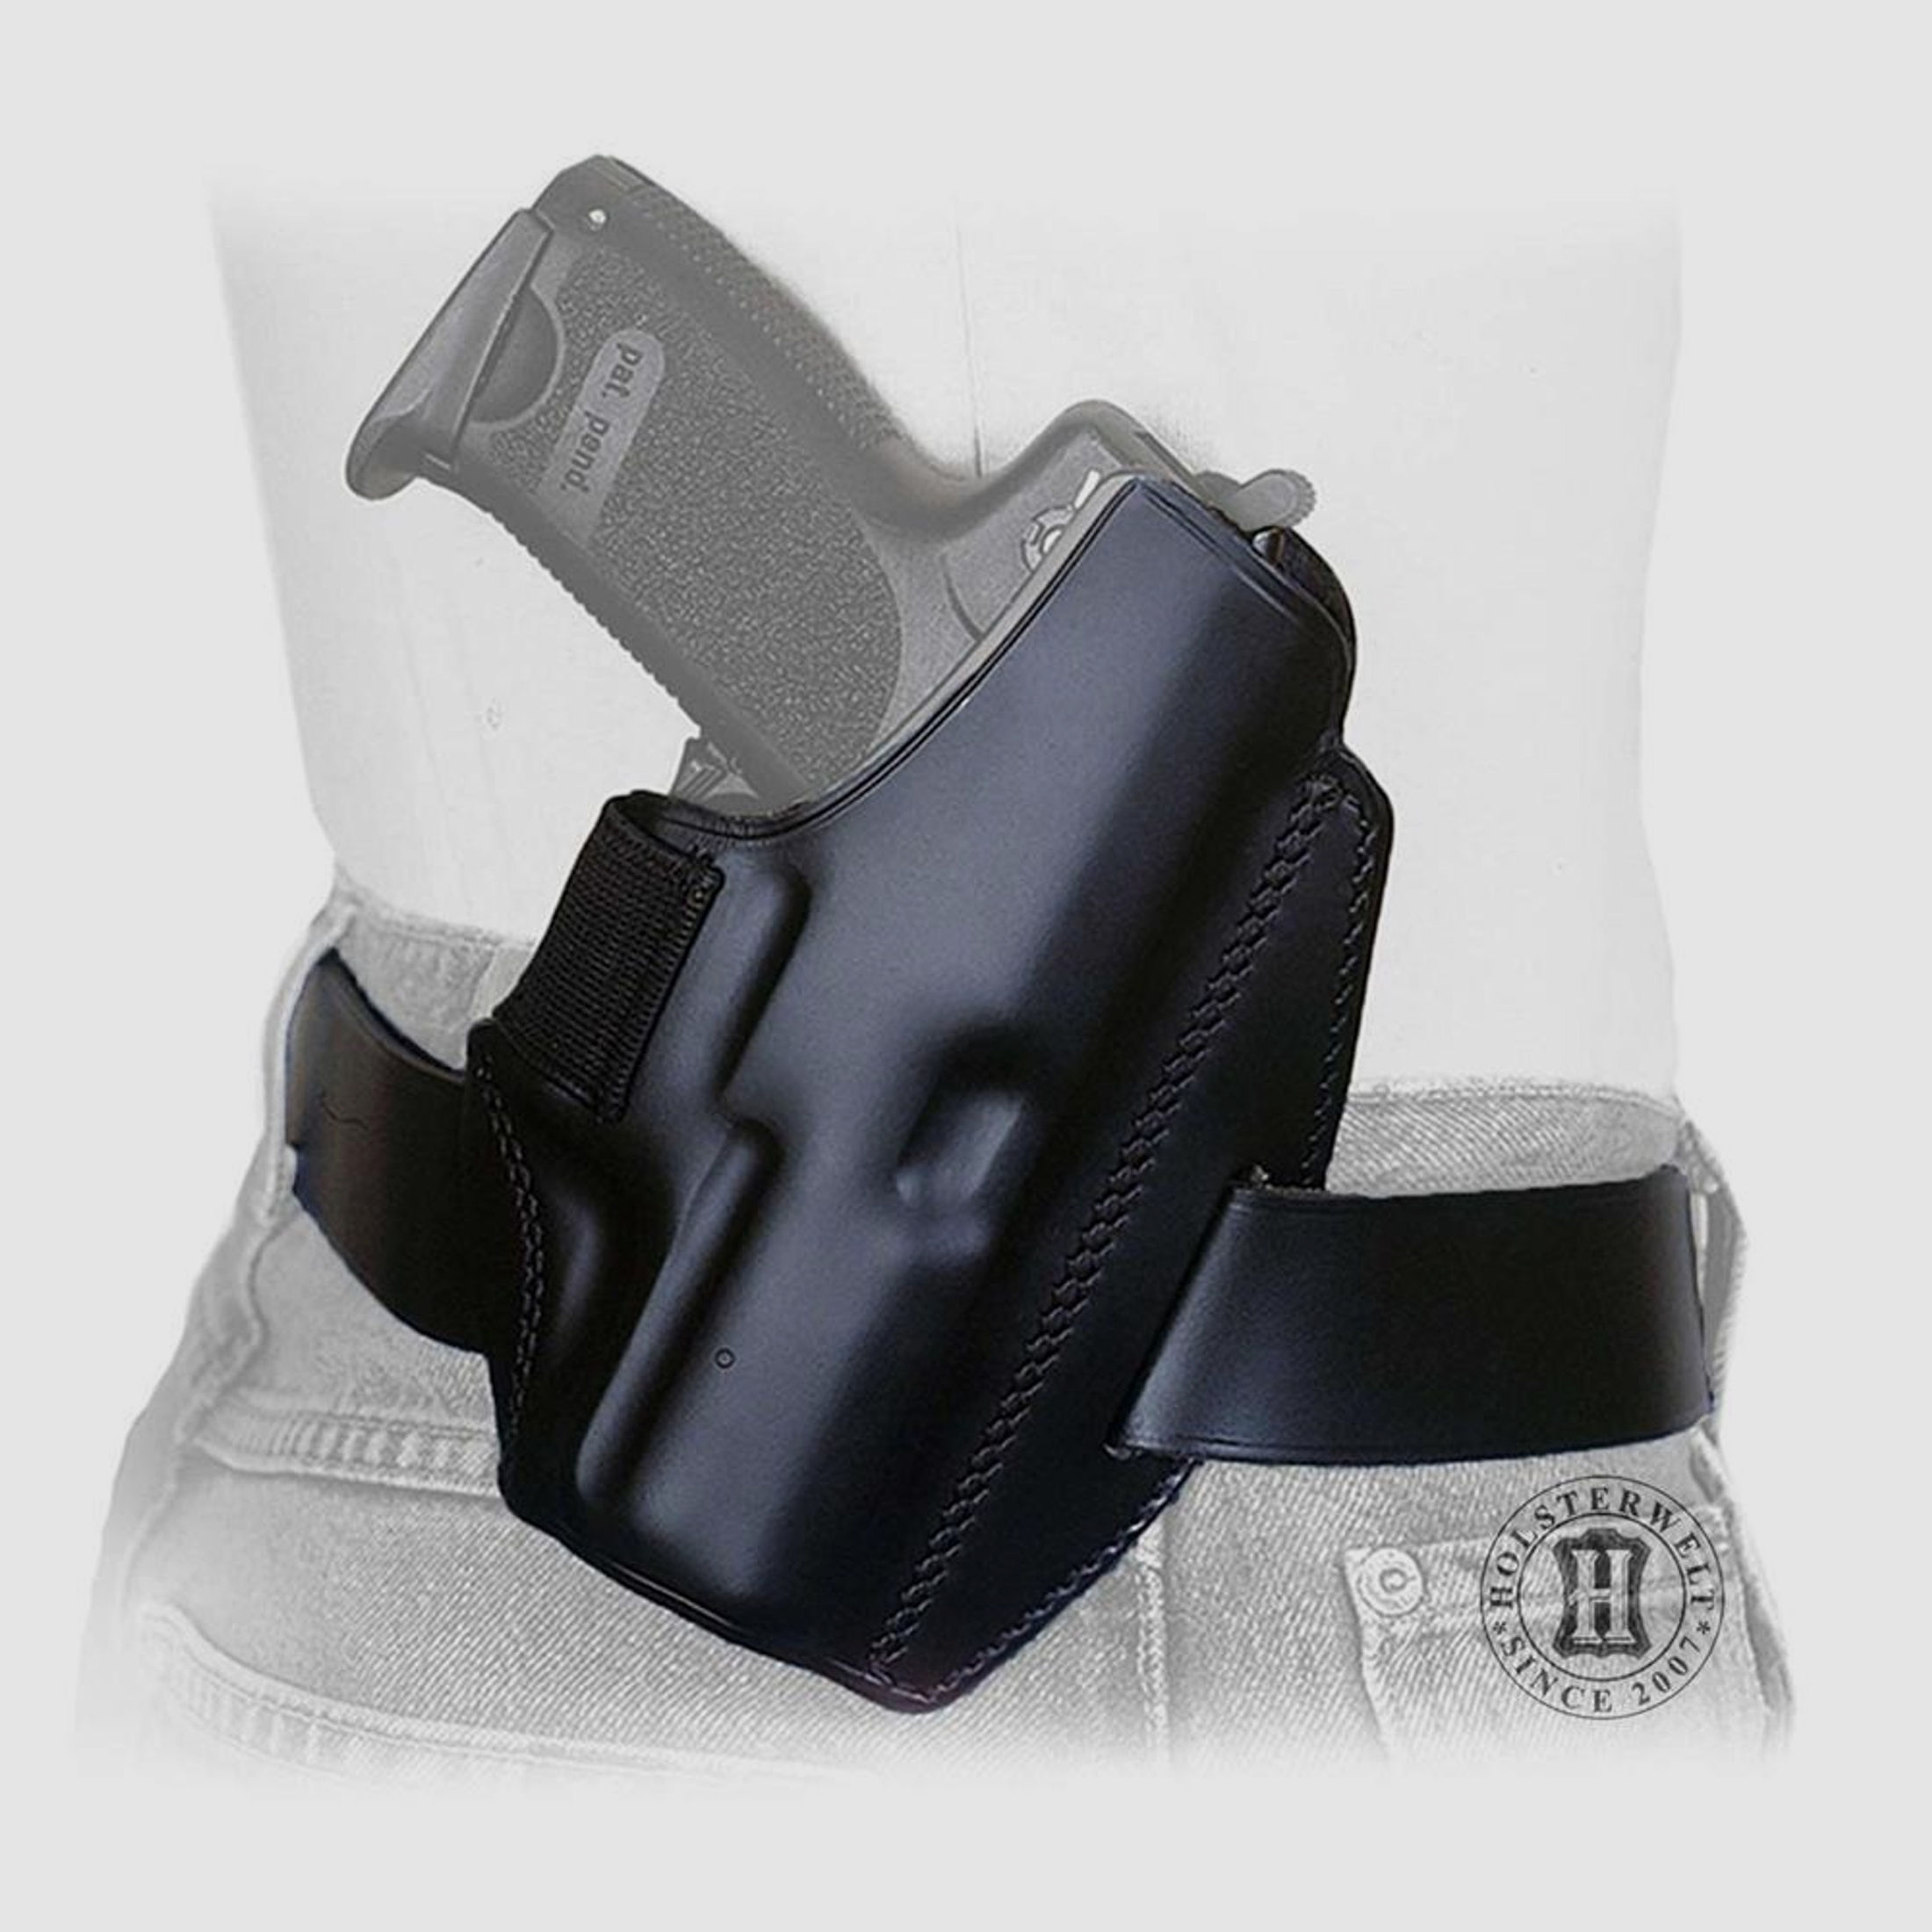 Gürtelholster QUICK DEFENSE Walther P22/P22Q Linkshänder